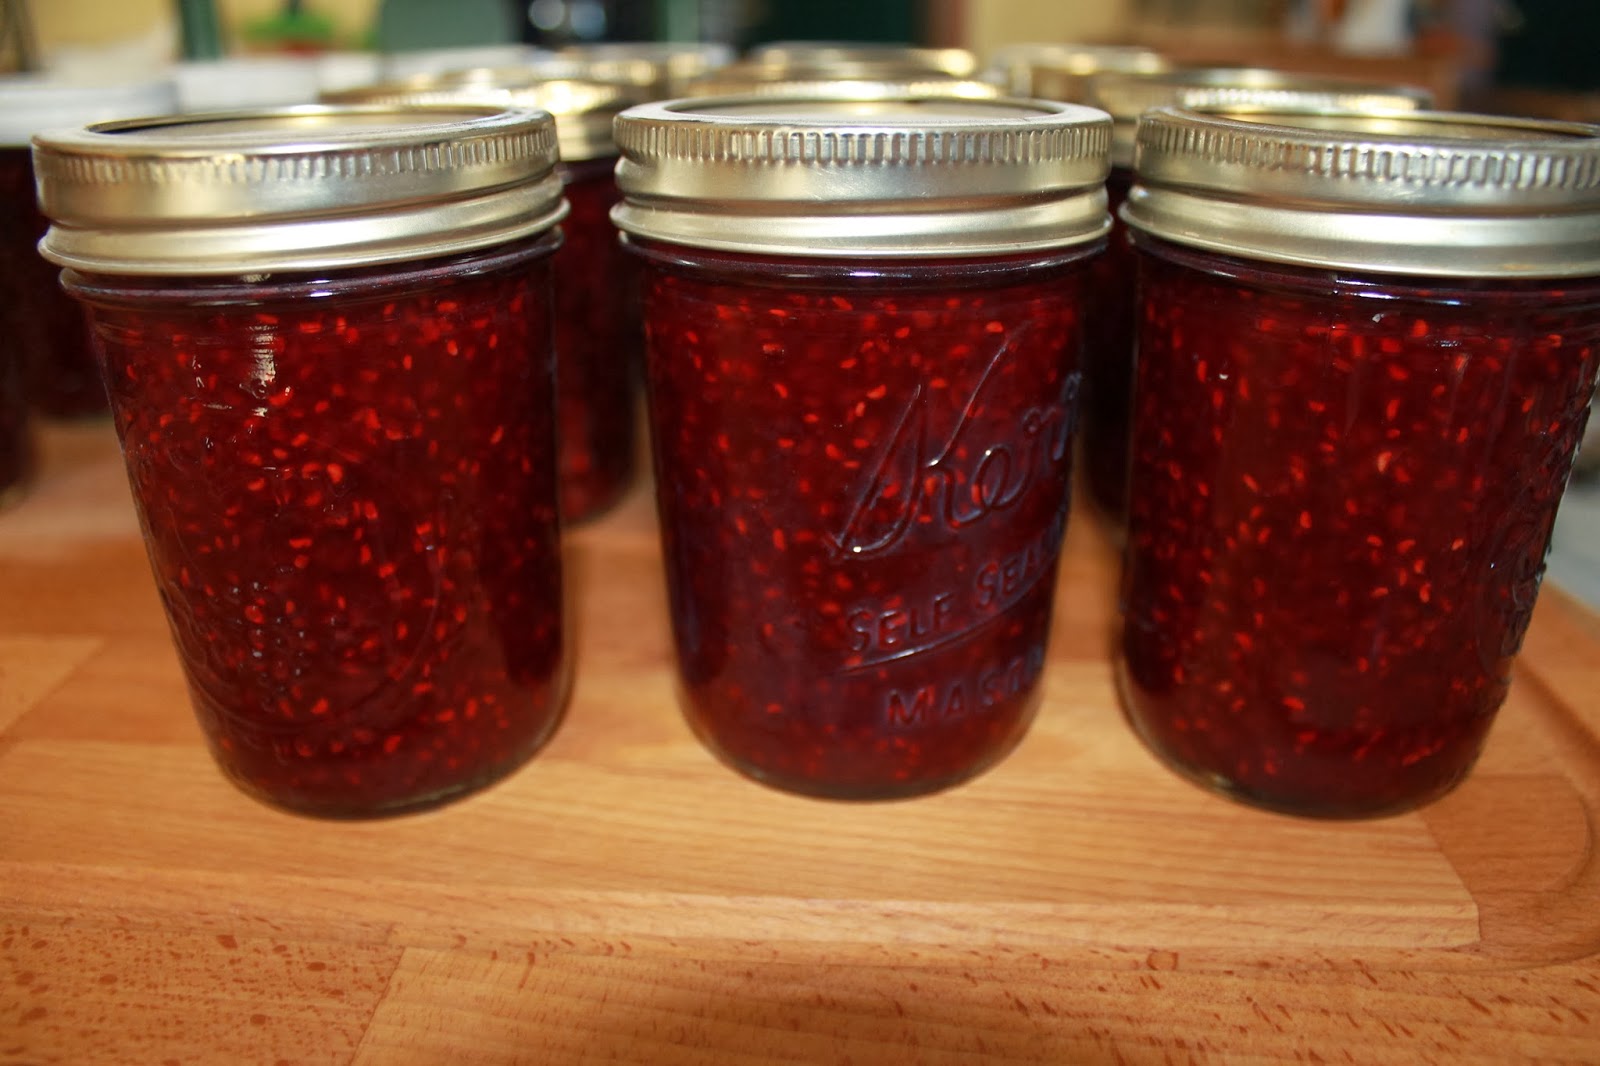 Raspberry Jam Recipe